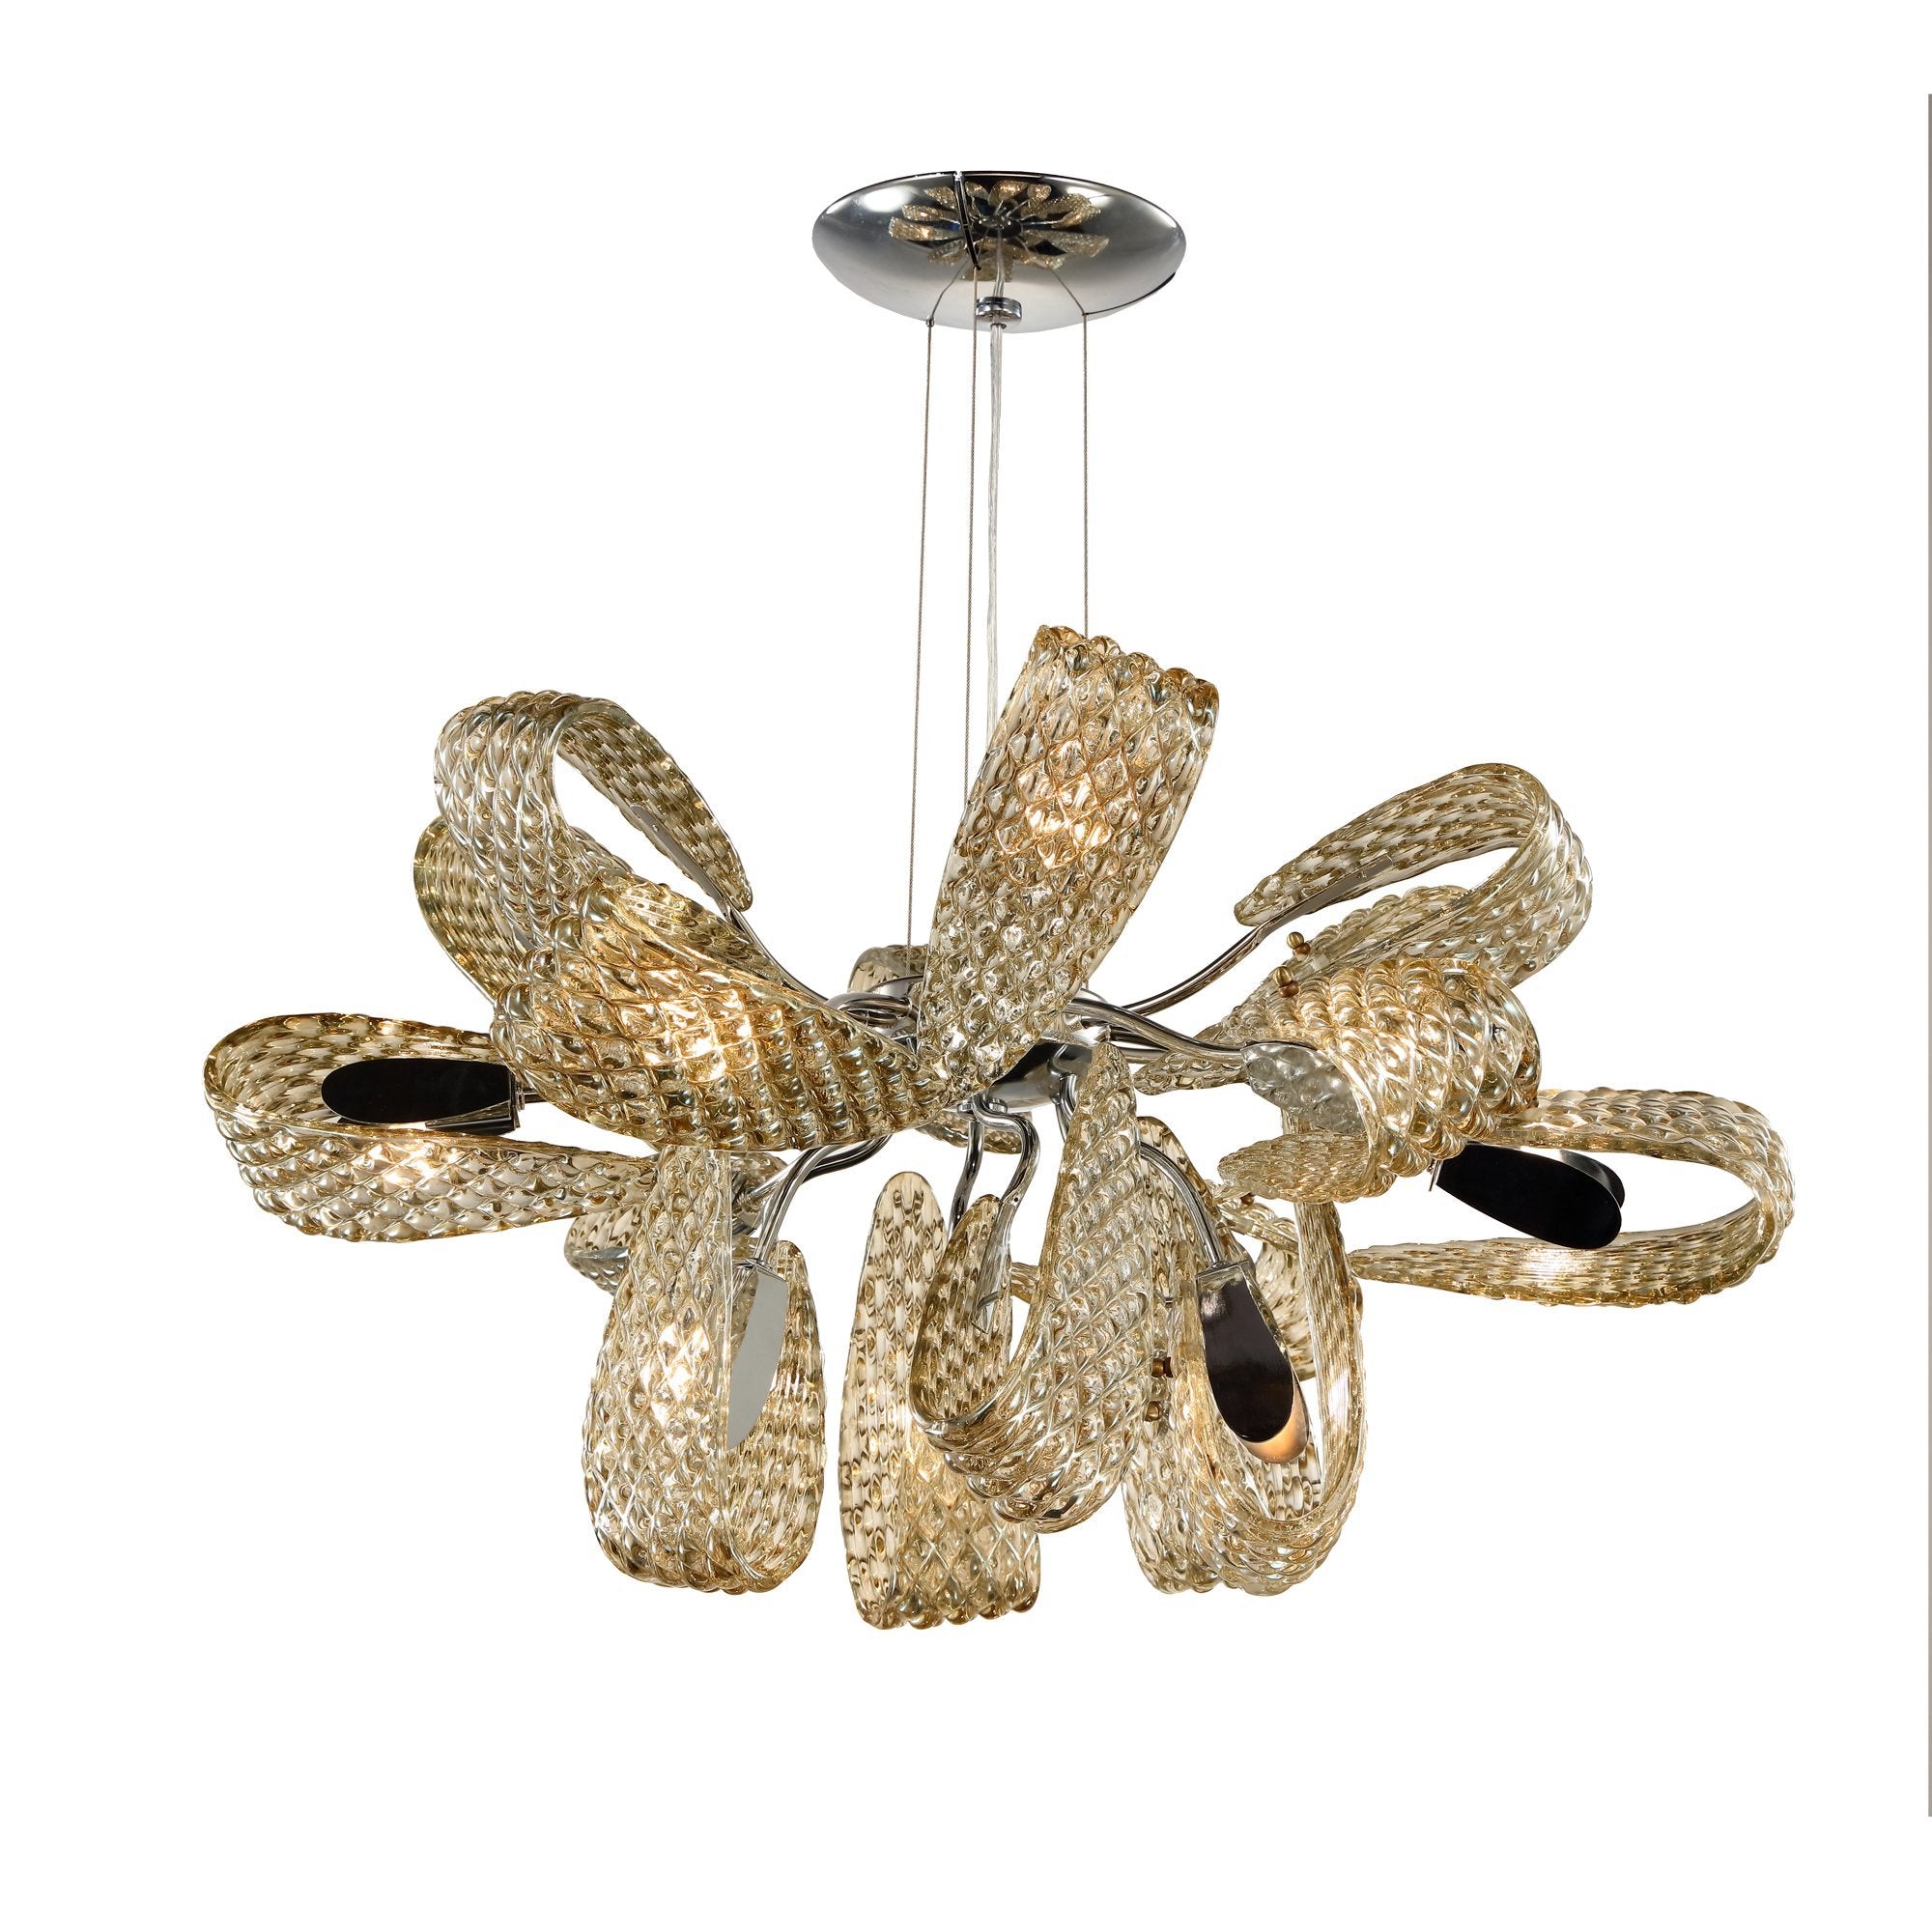 Bella Ropes Murano Glass Chandelier - Italian Concept - 